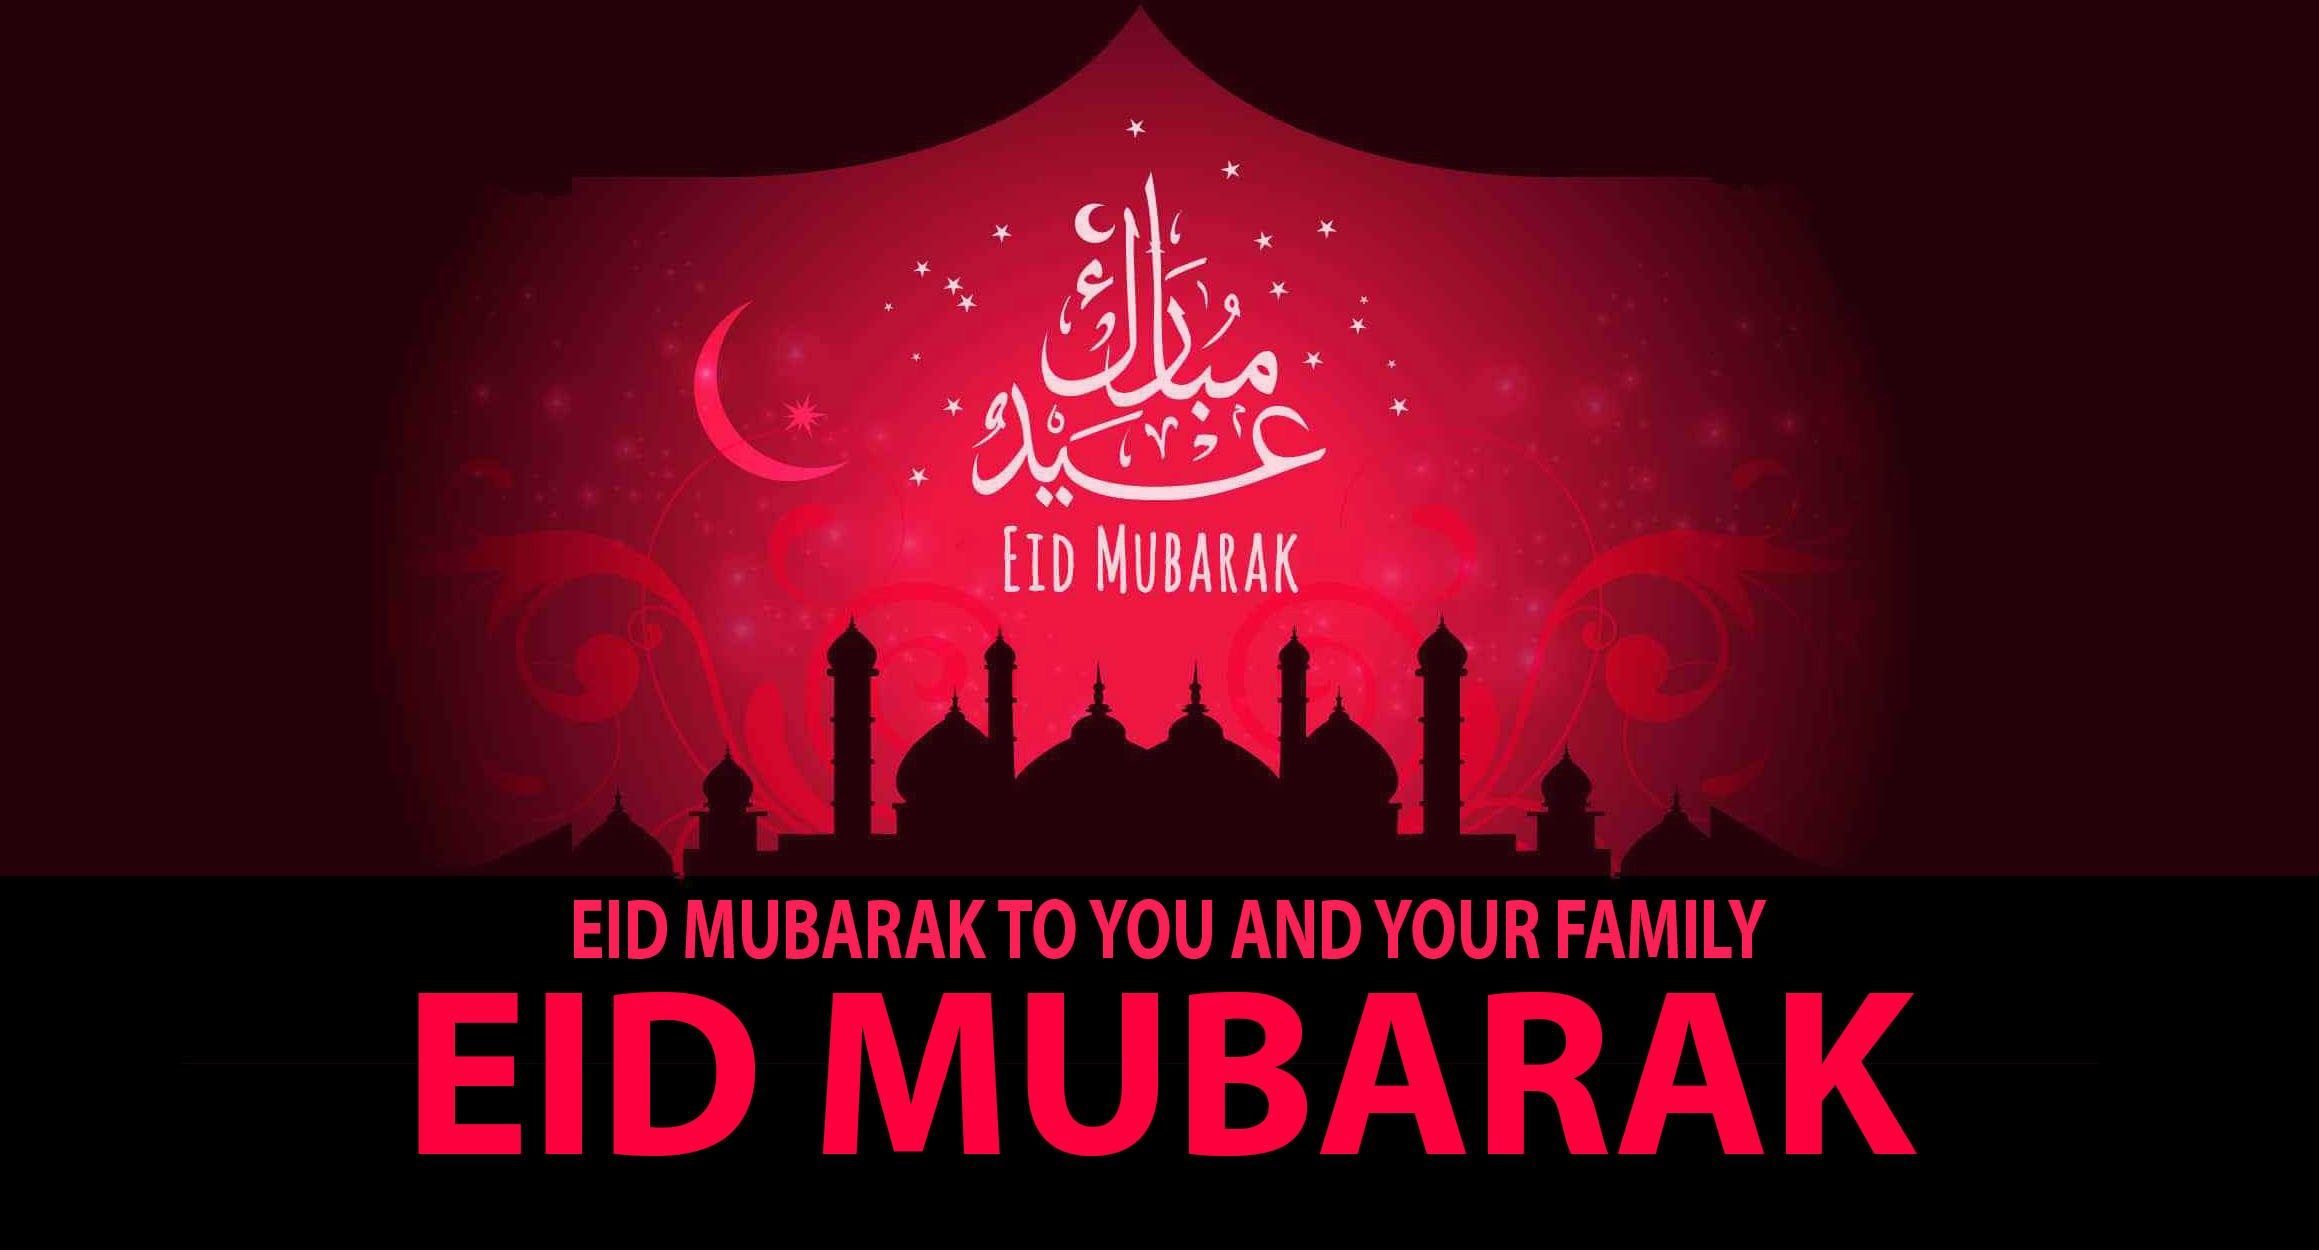 Eid Mubarak Quotes Wallpaper Live Wallpaper HD. Eid mubarak wallpaper, Eid ul fitr, Eid mubarak image